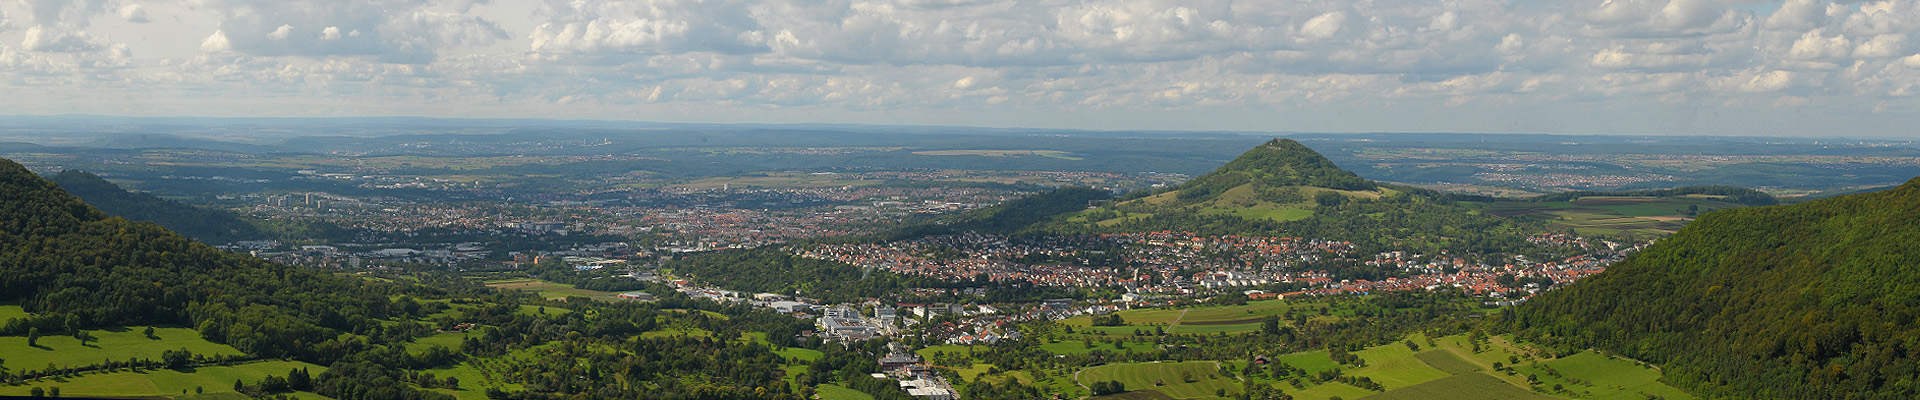 Region Neckar-Alb bei Tag